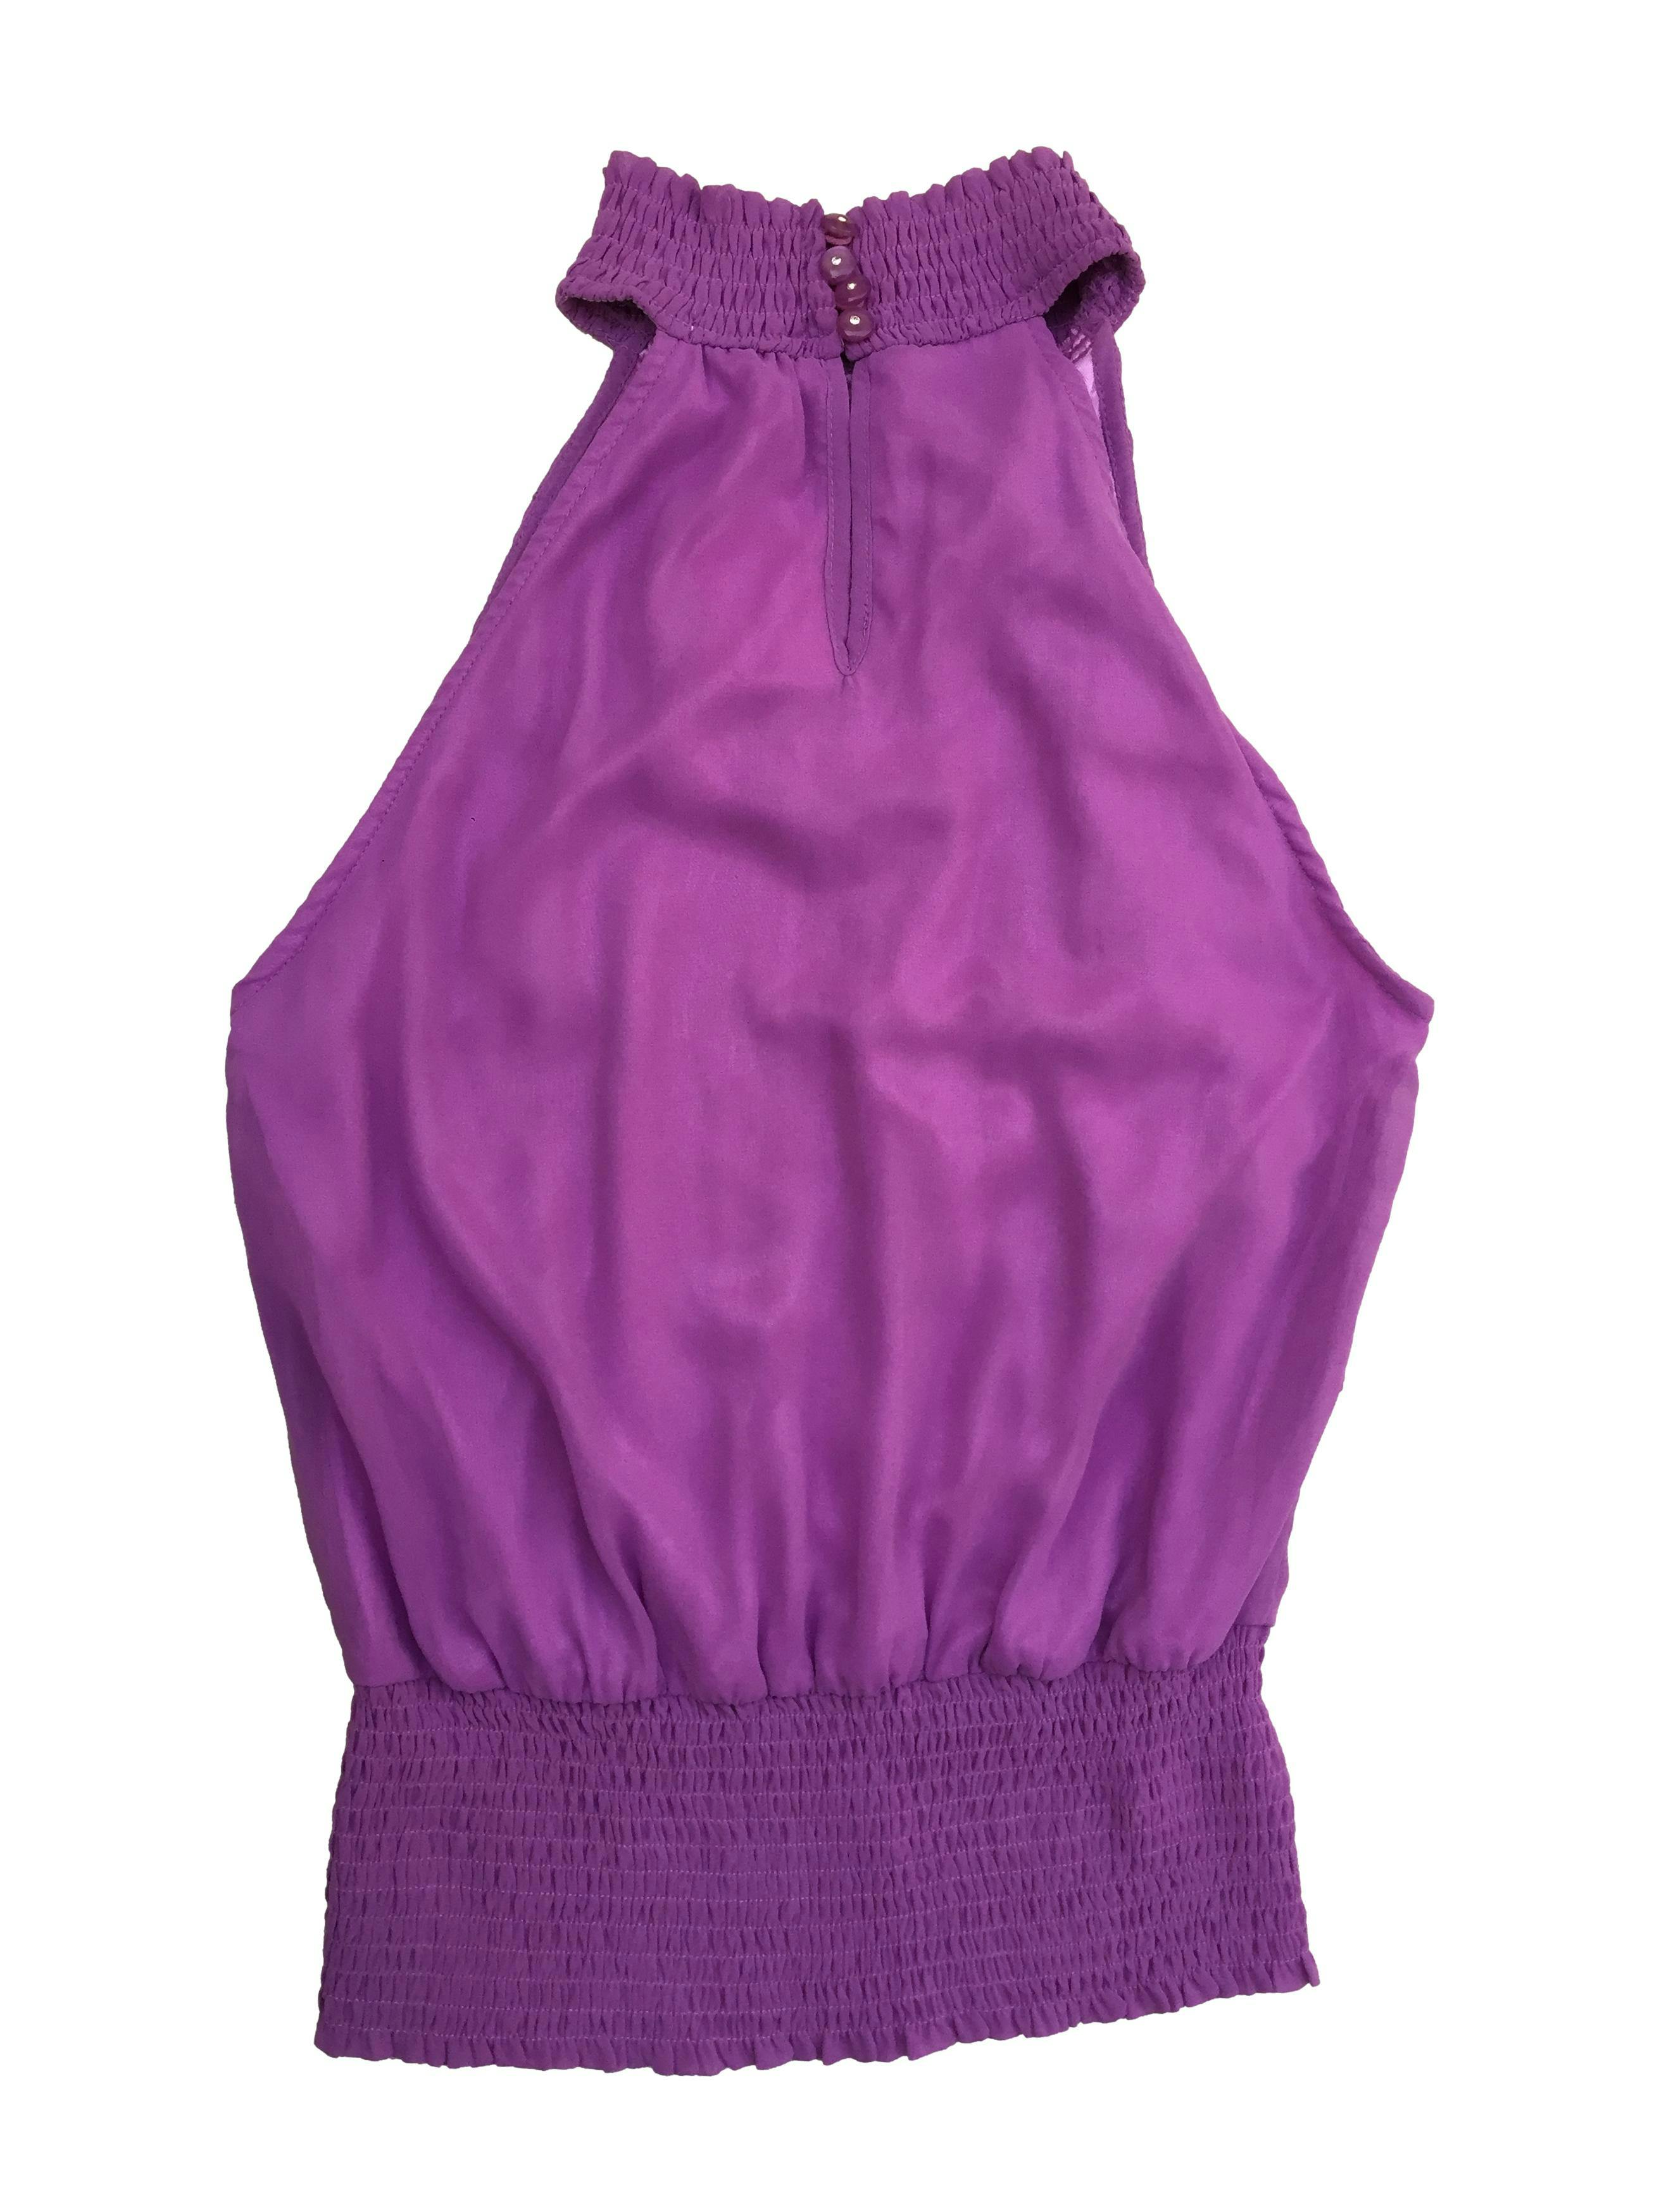 Blusa de gasa lila, forrada, fruncido en cuello y basta, con volantes en el pecho y aplicación rosa. Busto 100 cm, Largo 64 cm. Nueva con etiqueta, precio original S/120